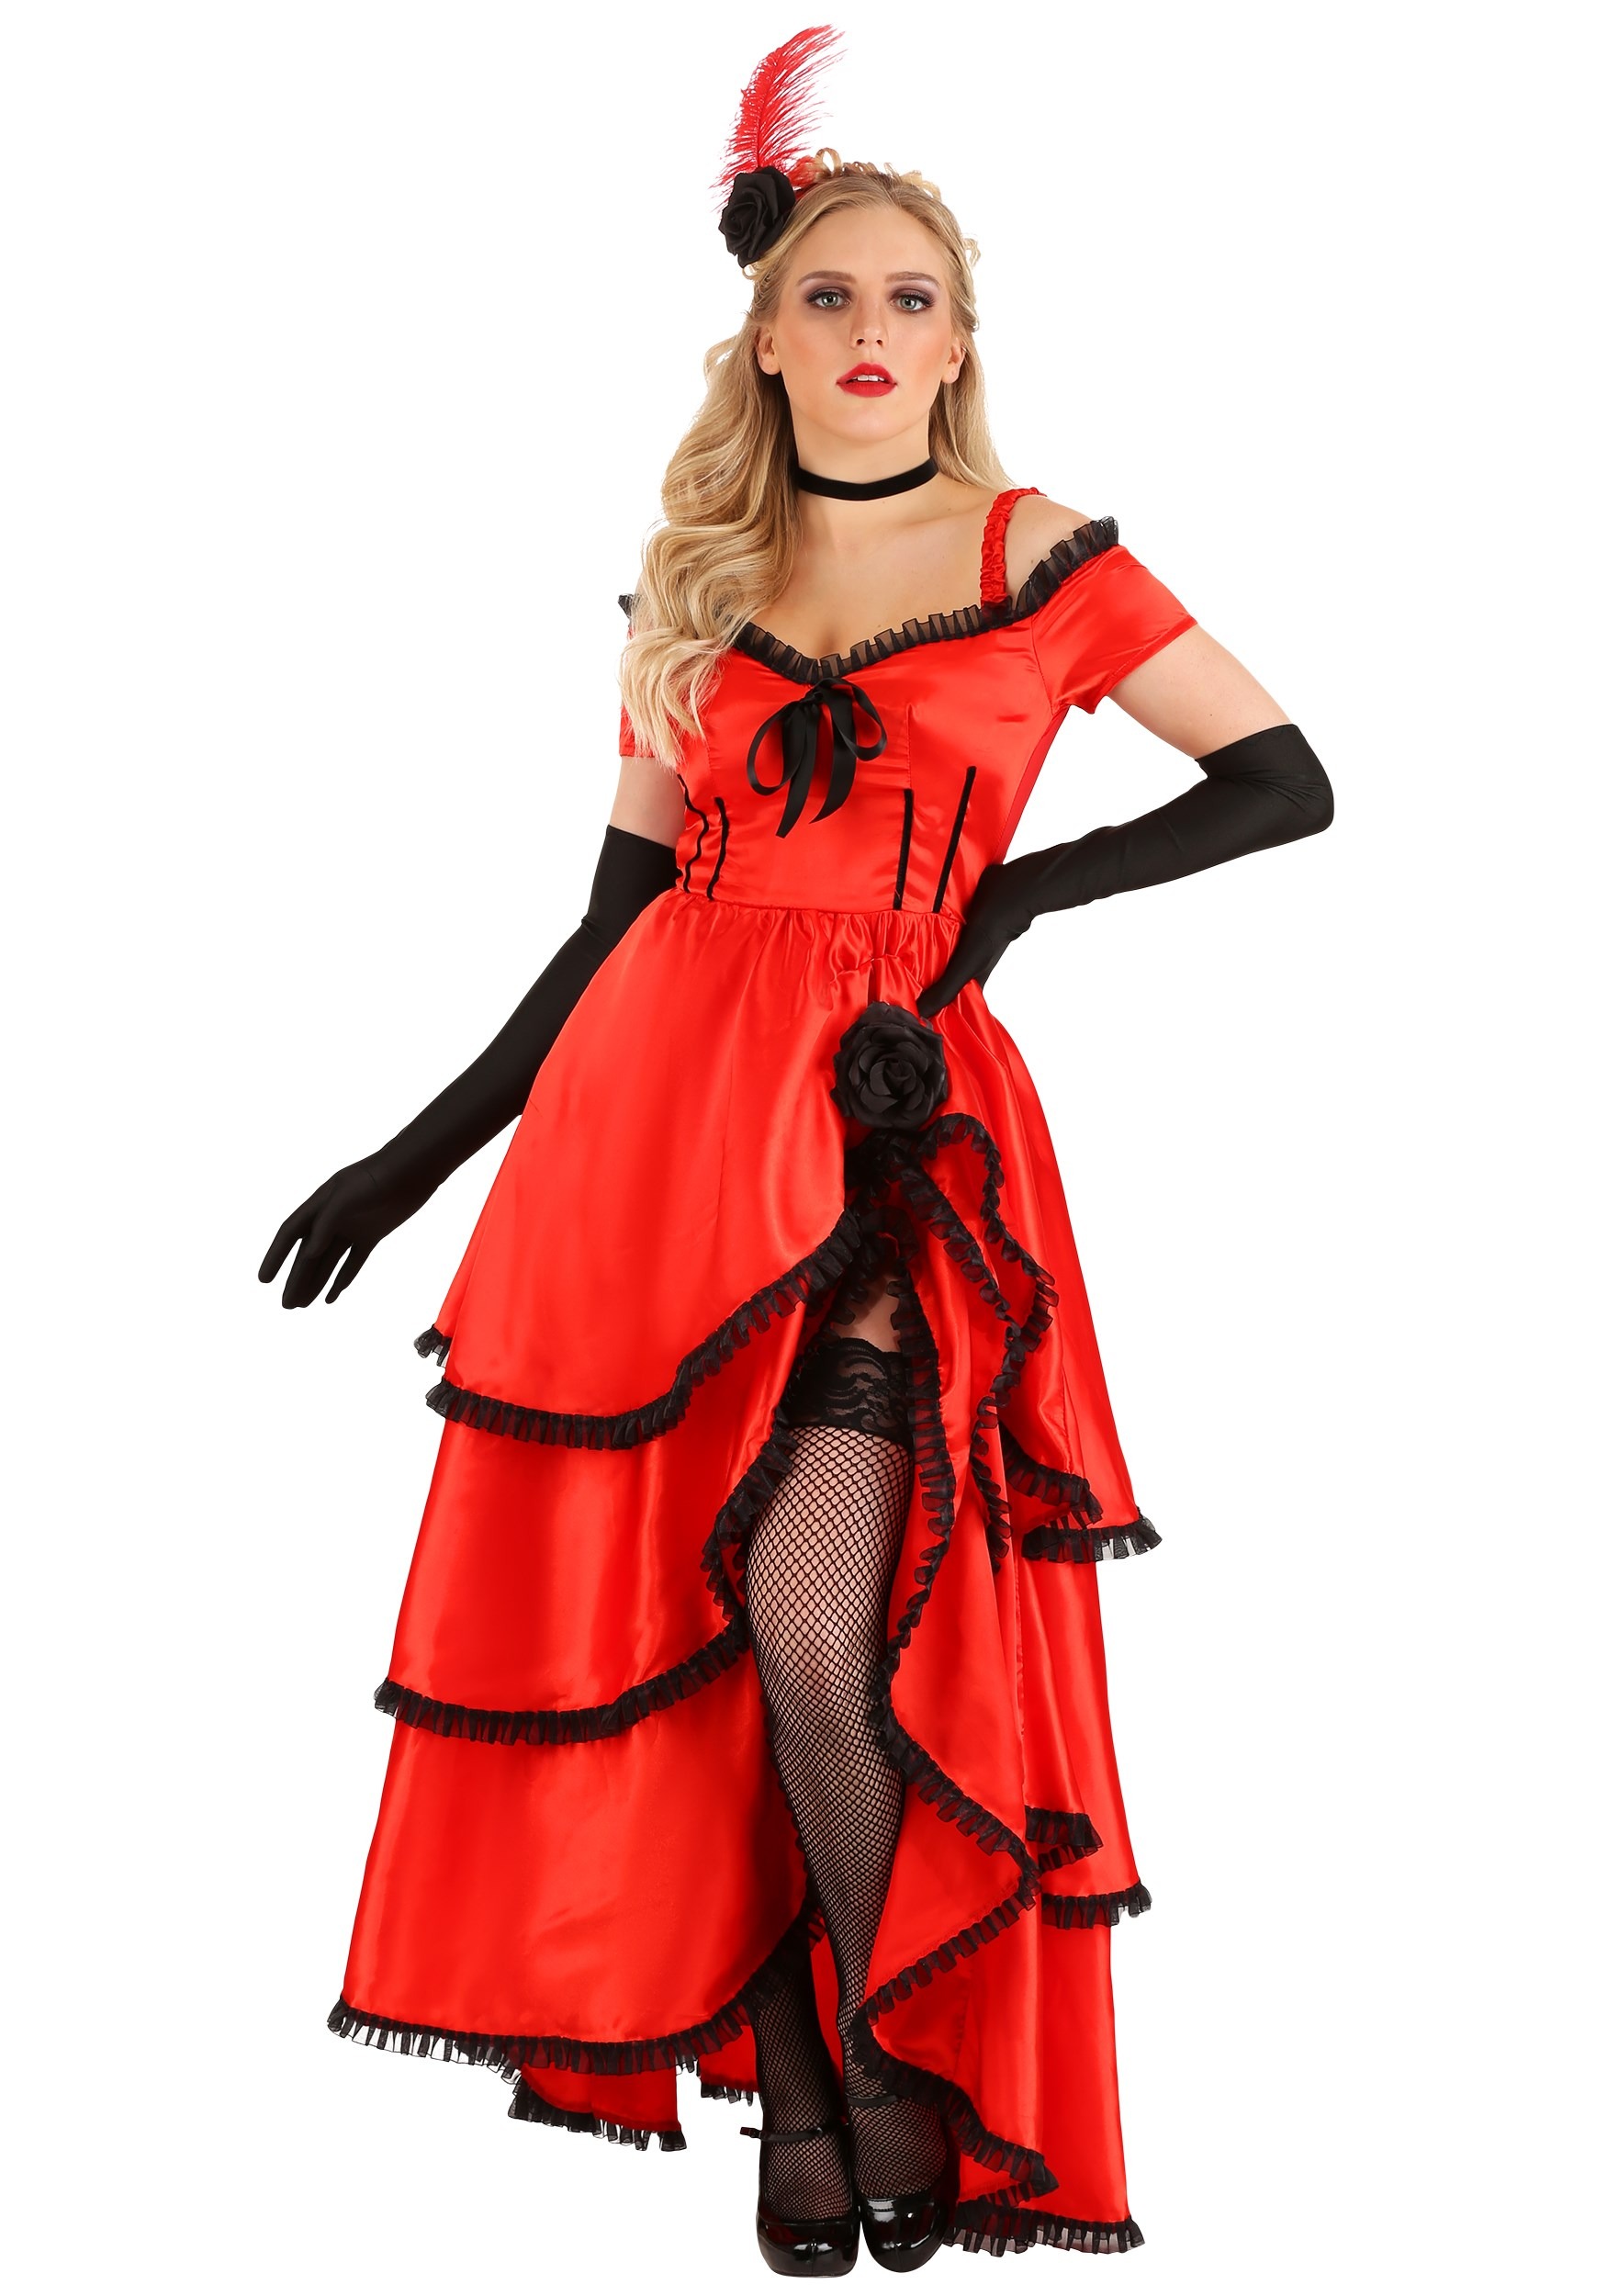 women-s-sassy-showgirl-costume-dress